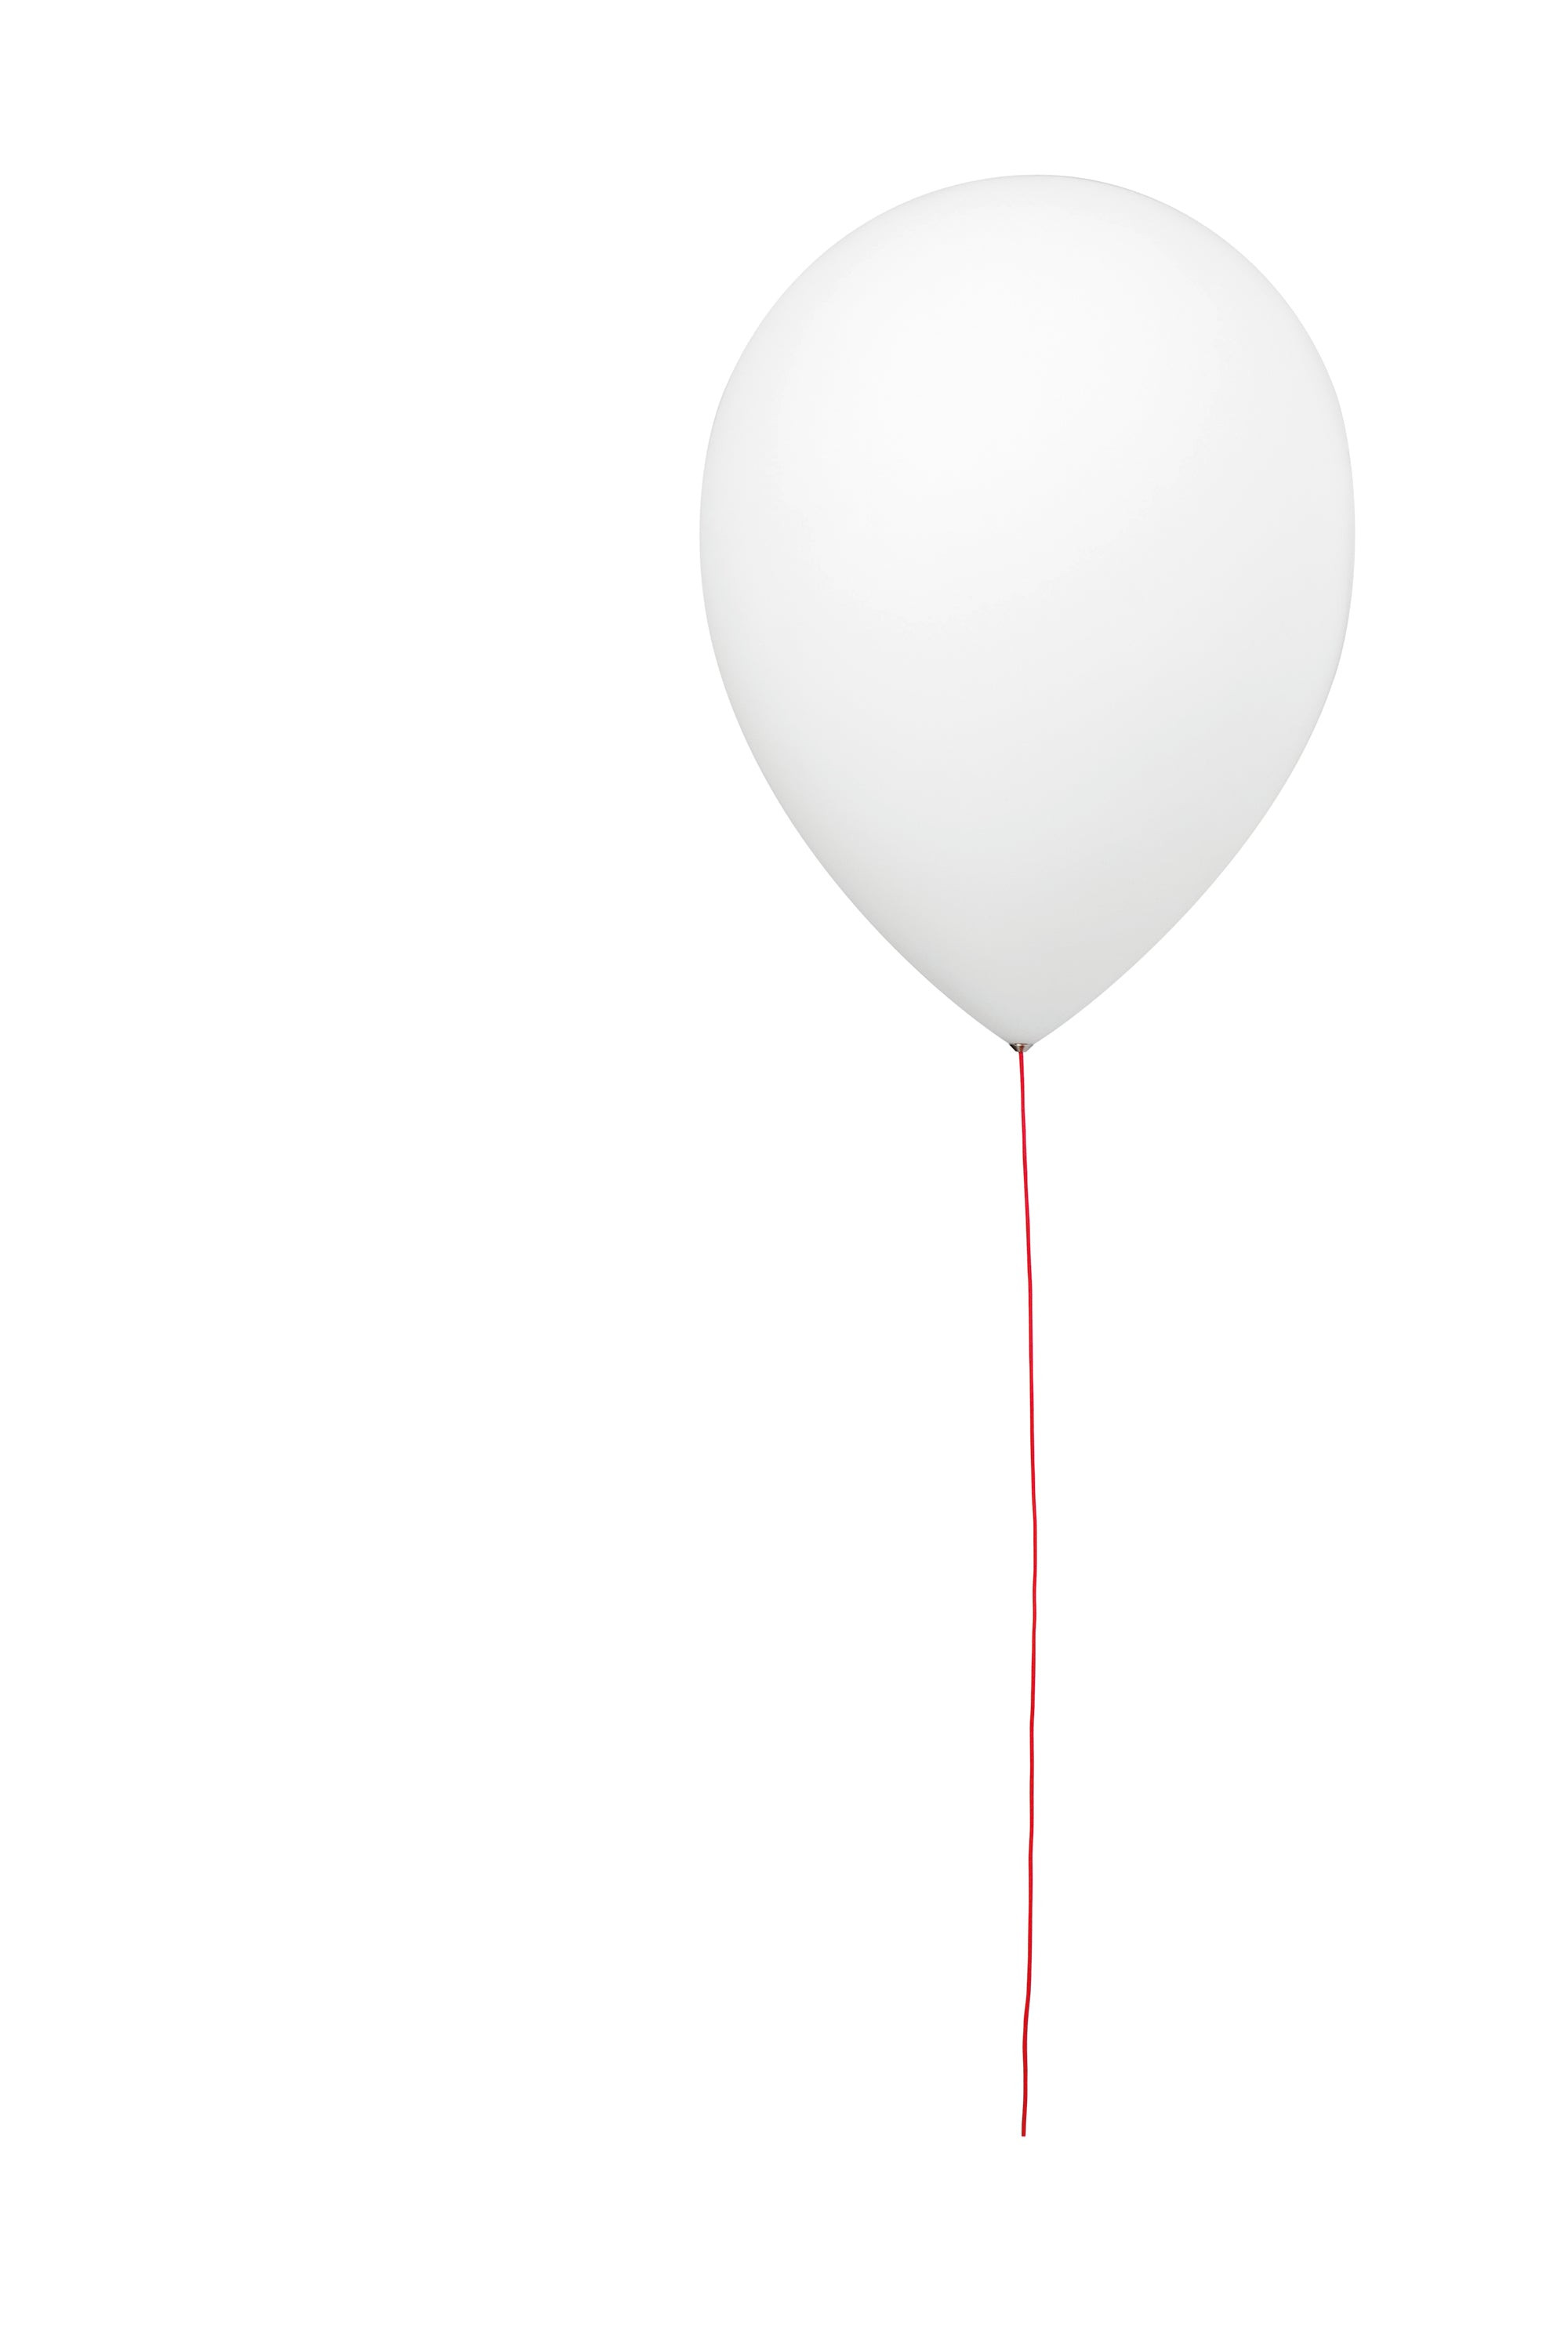 Estiluz - Balloon t-3052-74 Wit